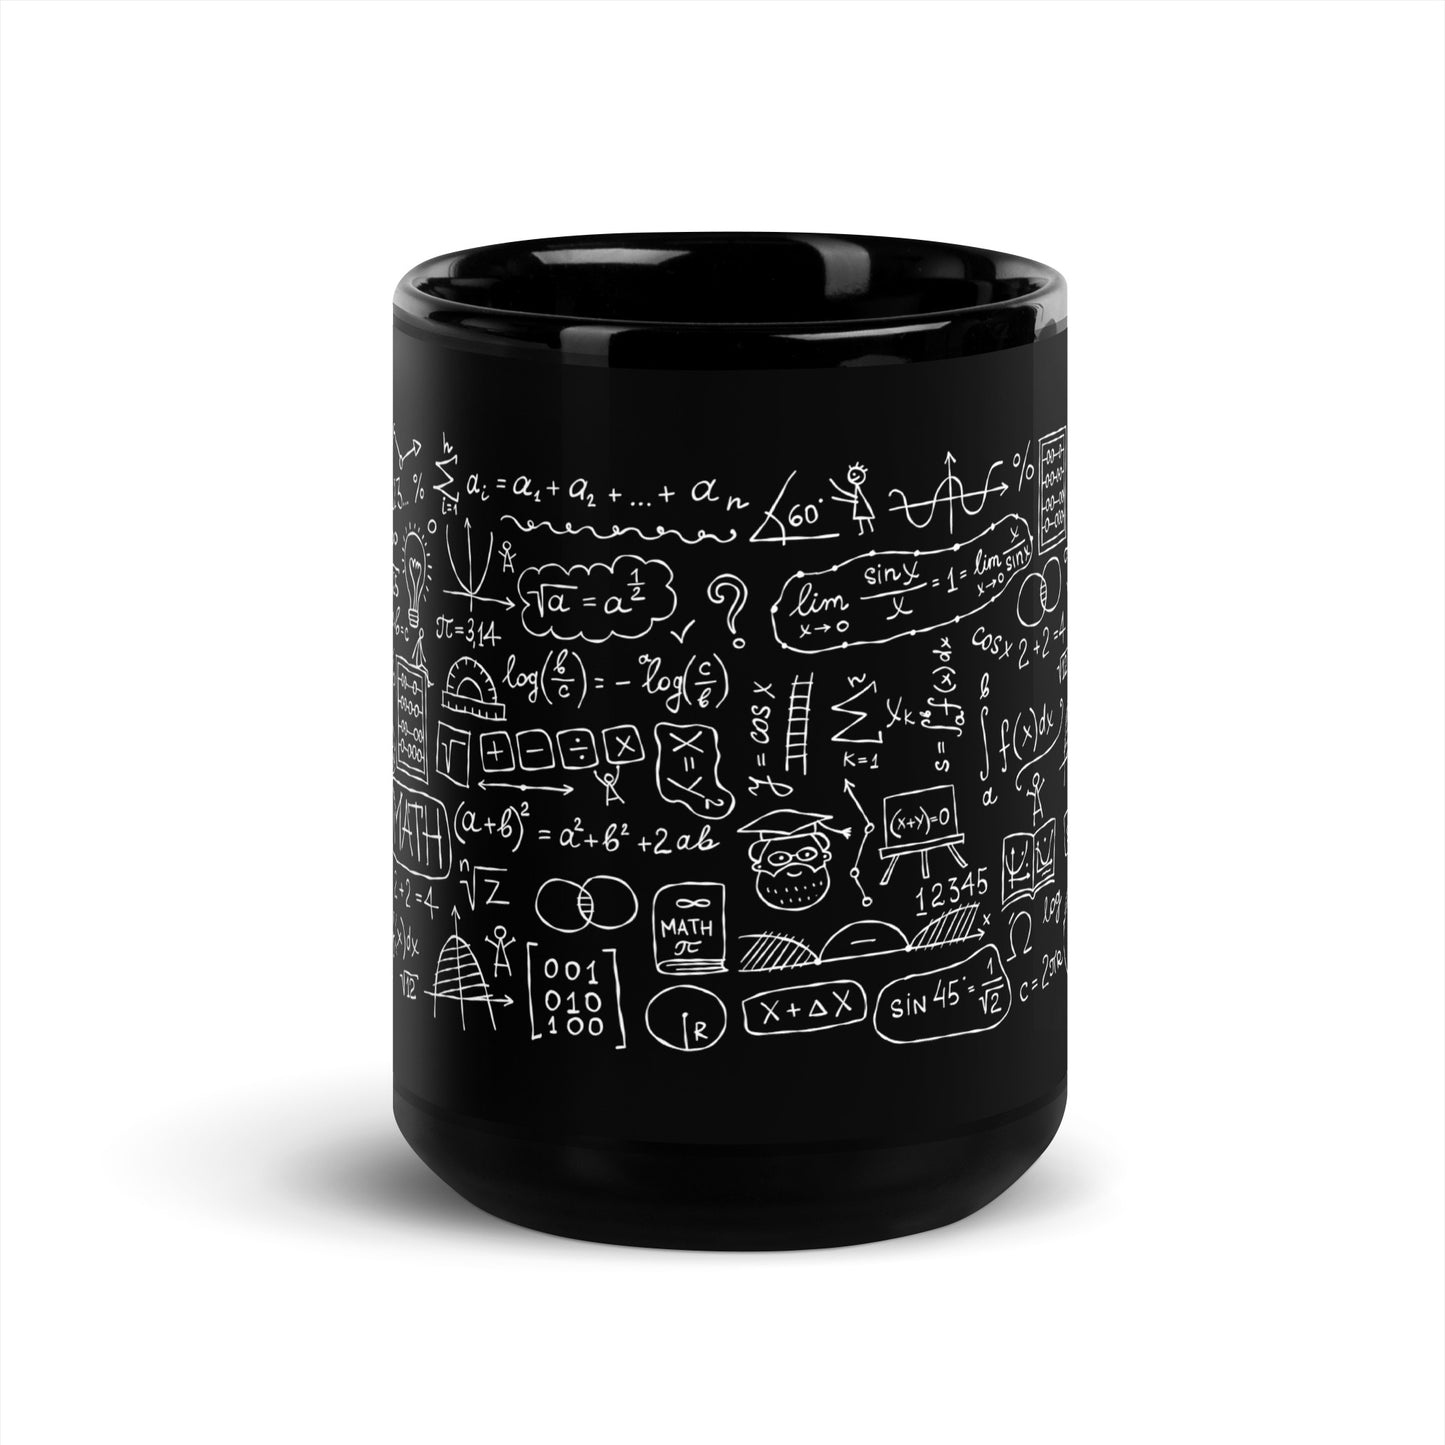 Mathematical Formulas and Symbols stylish black Gift Mug for Teachers, Students, and STEM Enthusiasts kudrylab